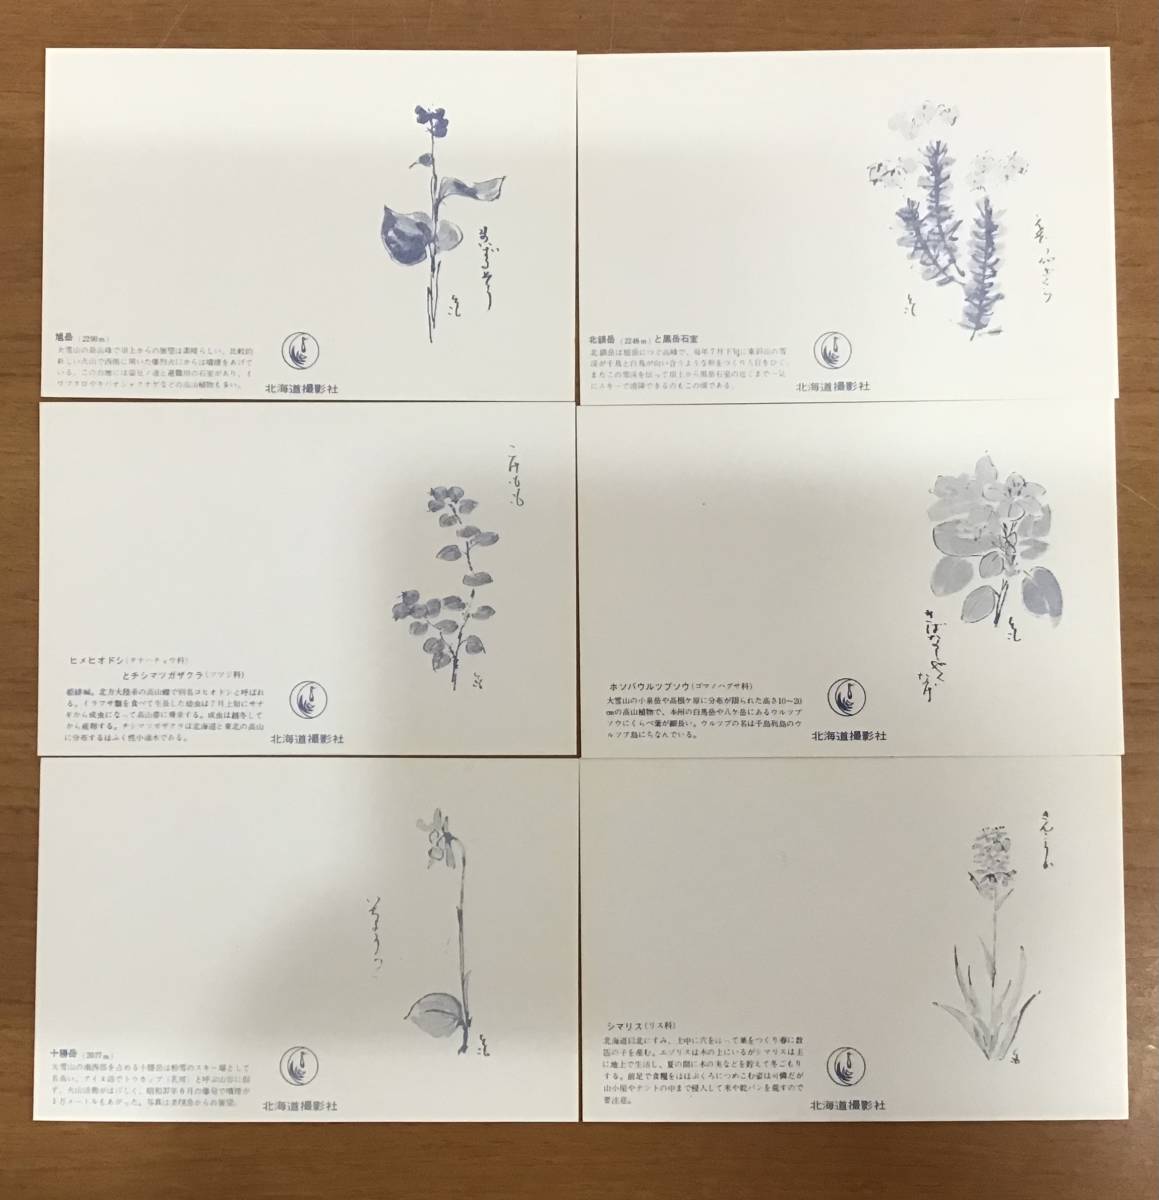  большой снежные горы . перемещение растения Mini открытка открытка с видом 20 листов ввод природа пейзаж животное растения цветок открытка 